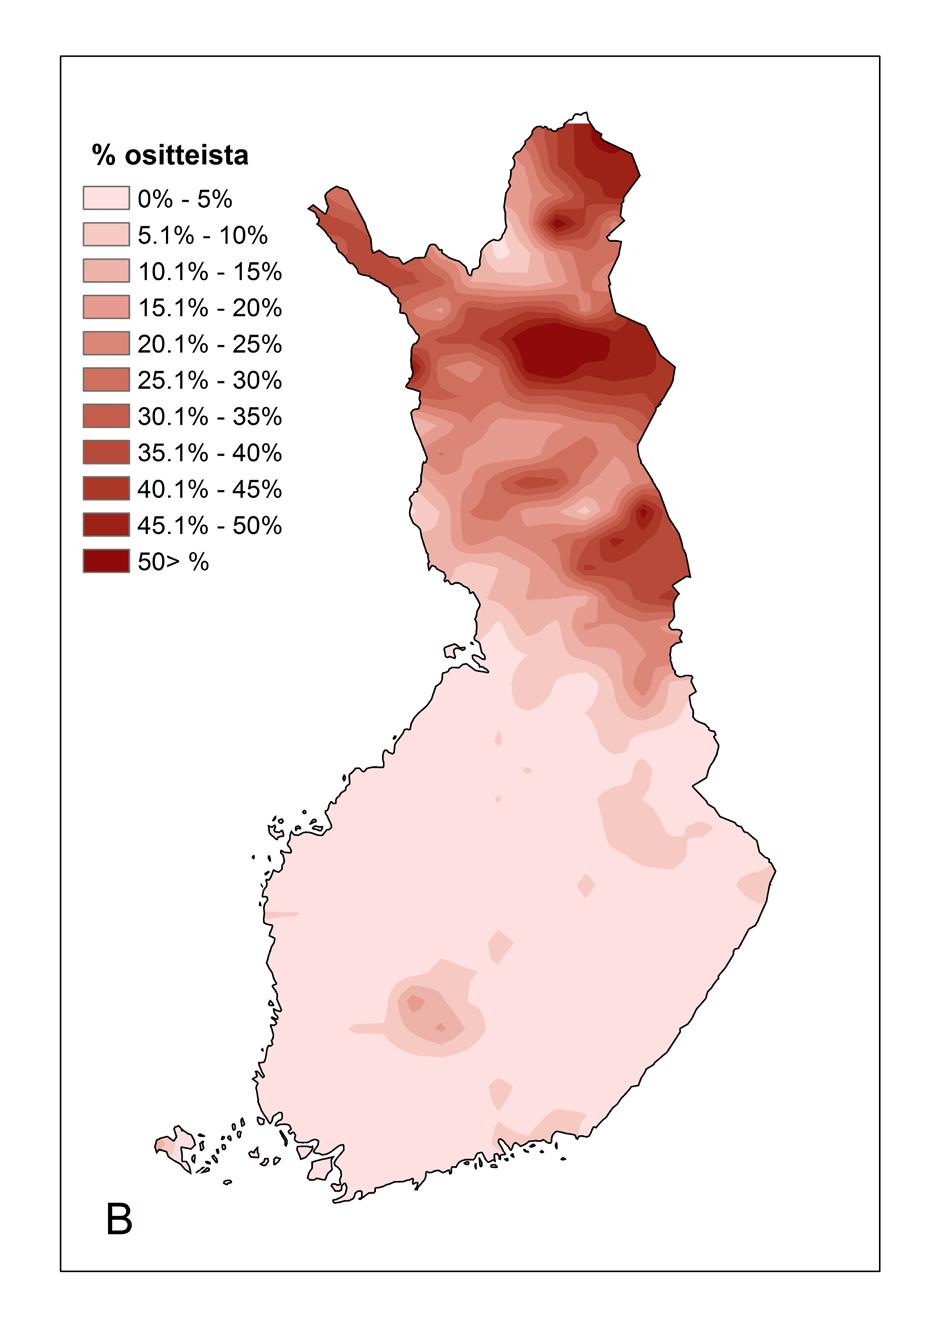 Lumituhot keskittyvät Lappiin ja Kainuuseen. Tuulituhoja esiintyy enemmän maan eteläosissa. Laajin tuulituhojen keskittymä tavataan Pirkanmaalla (kuva 25).